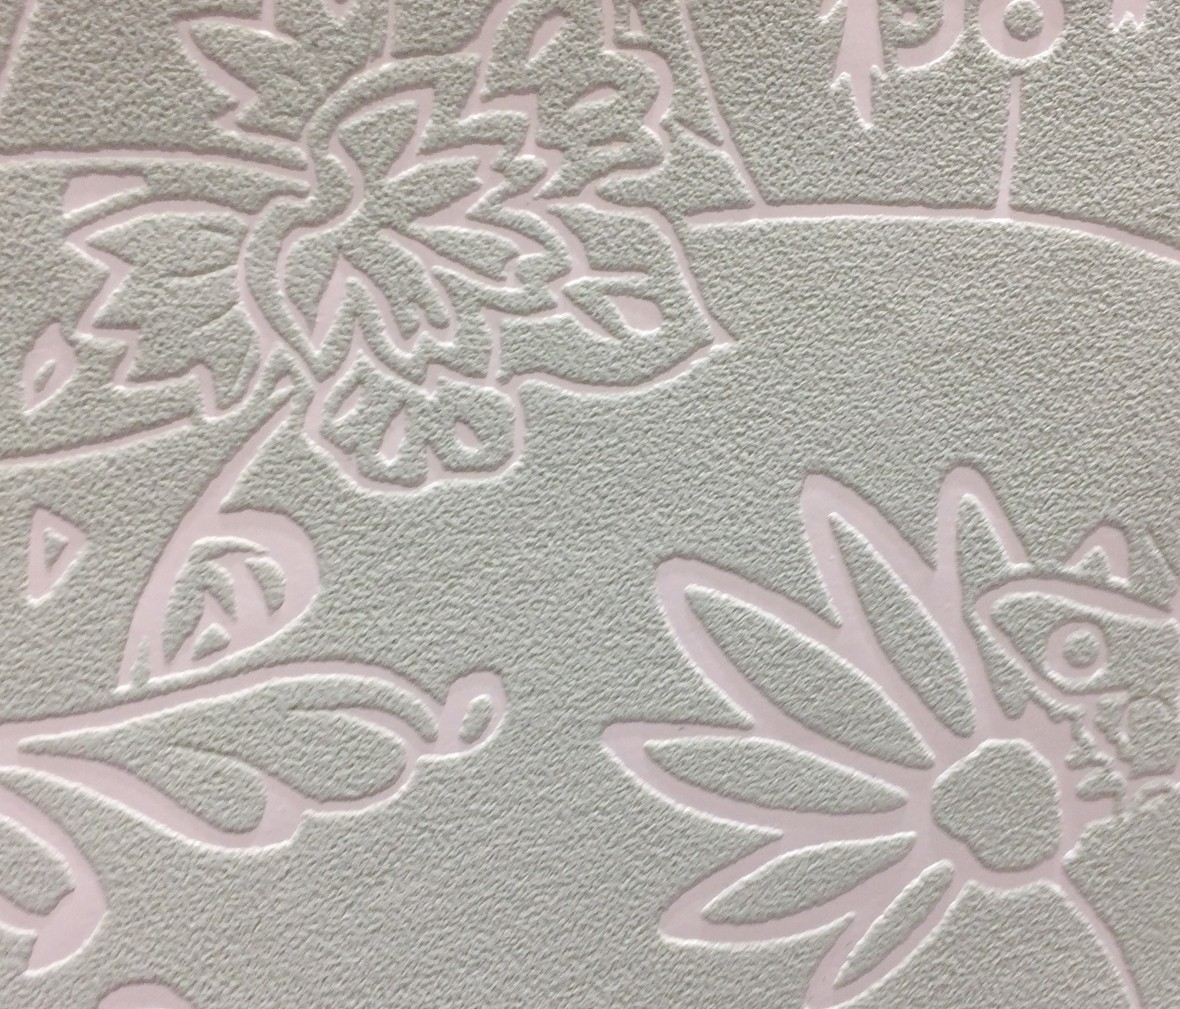 格莱美壁纸 海伊系列218171型号壁纸 进口环保无纺布墙纸 细节